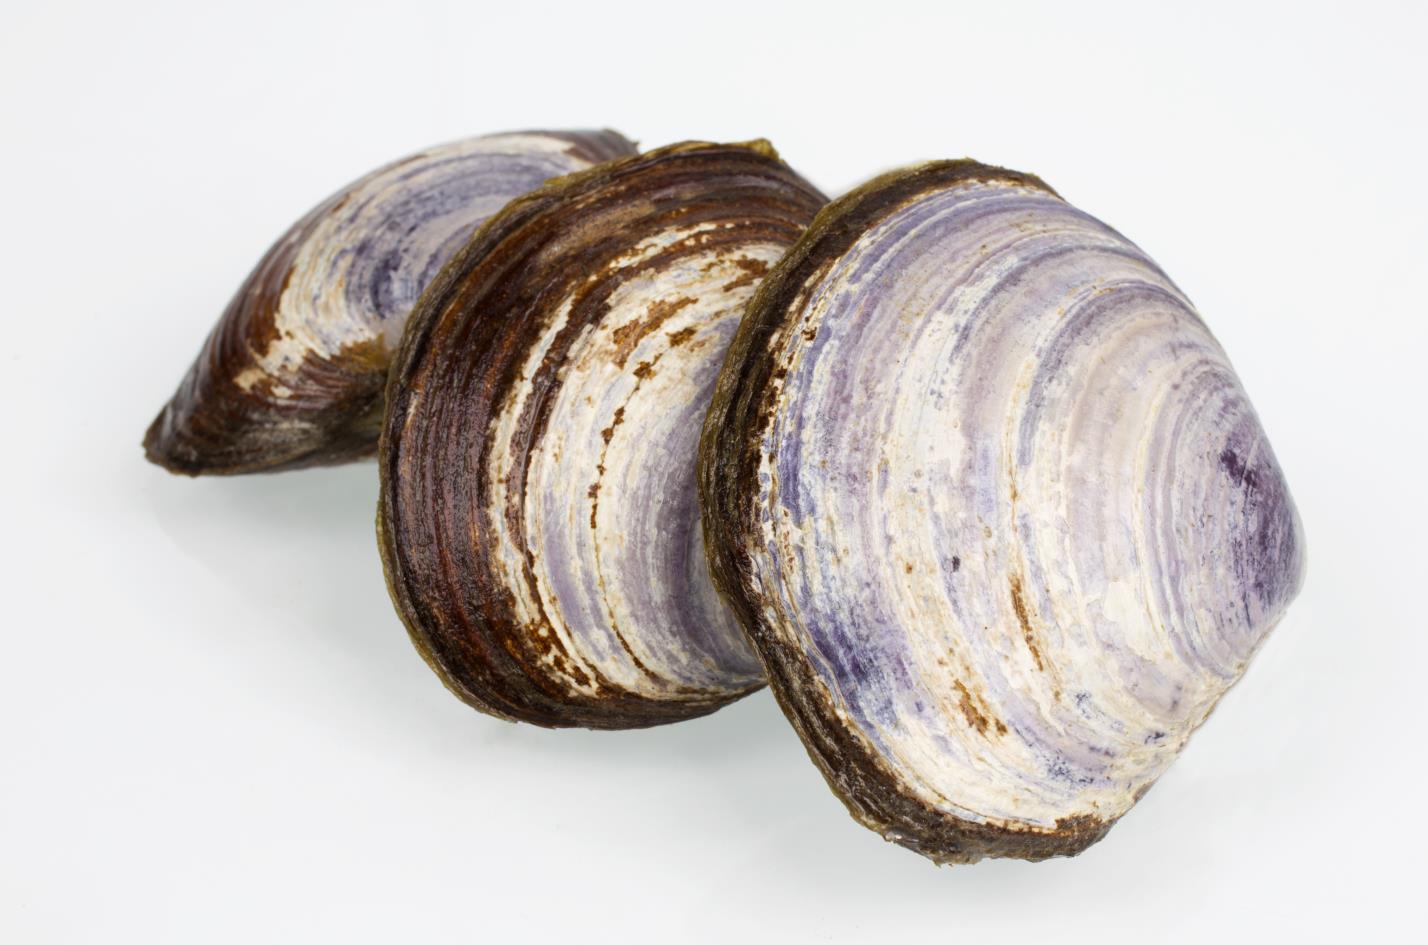 Les délicieuses palourdes salées font partie des plus de 500 produits recommandés par Seacore Seafood Inc. et disponibles sur le site Ocean Wise . Crédit : Seacore Seafood Inc.